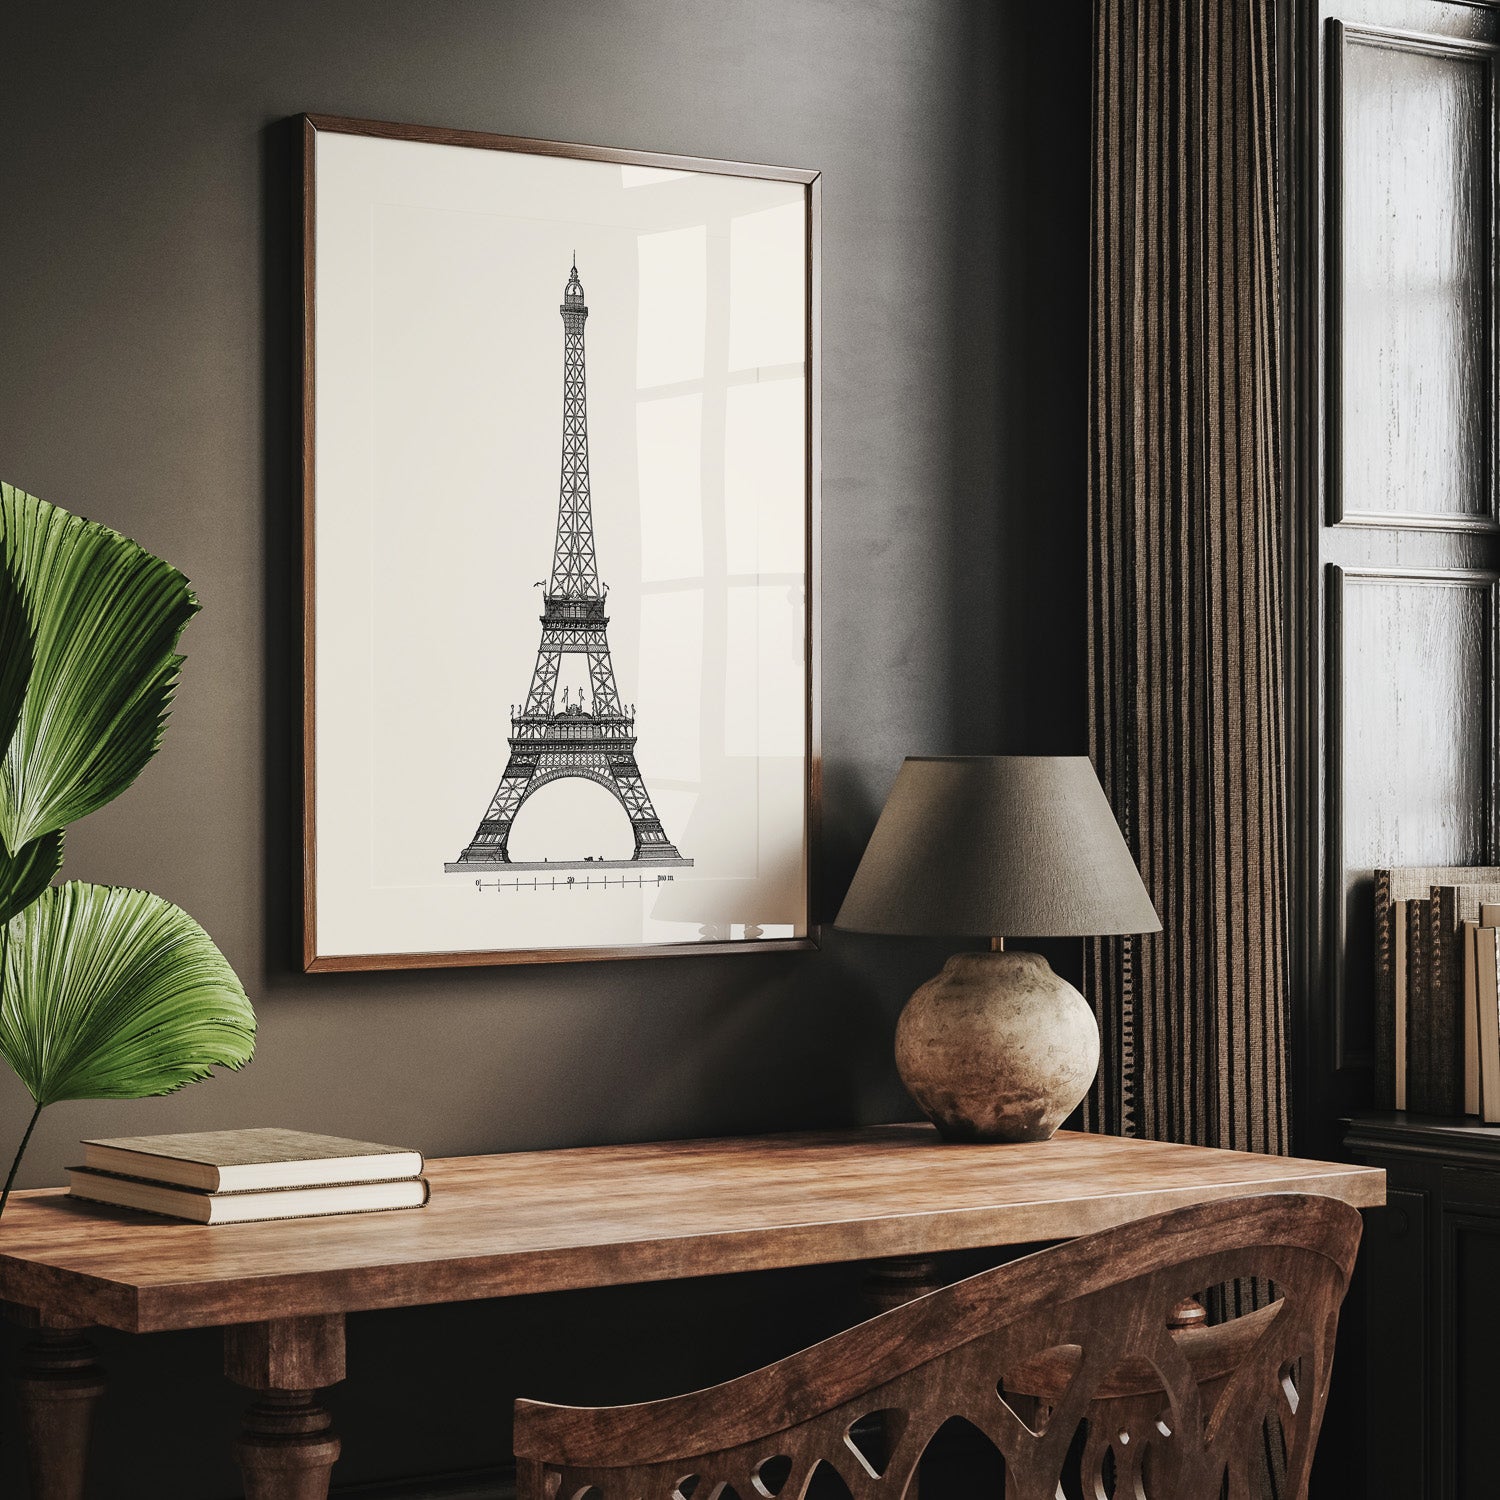 Tavla med en Vintageposter med en illustration av Eiffeltornet i Paris – Arkitektur poster